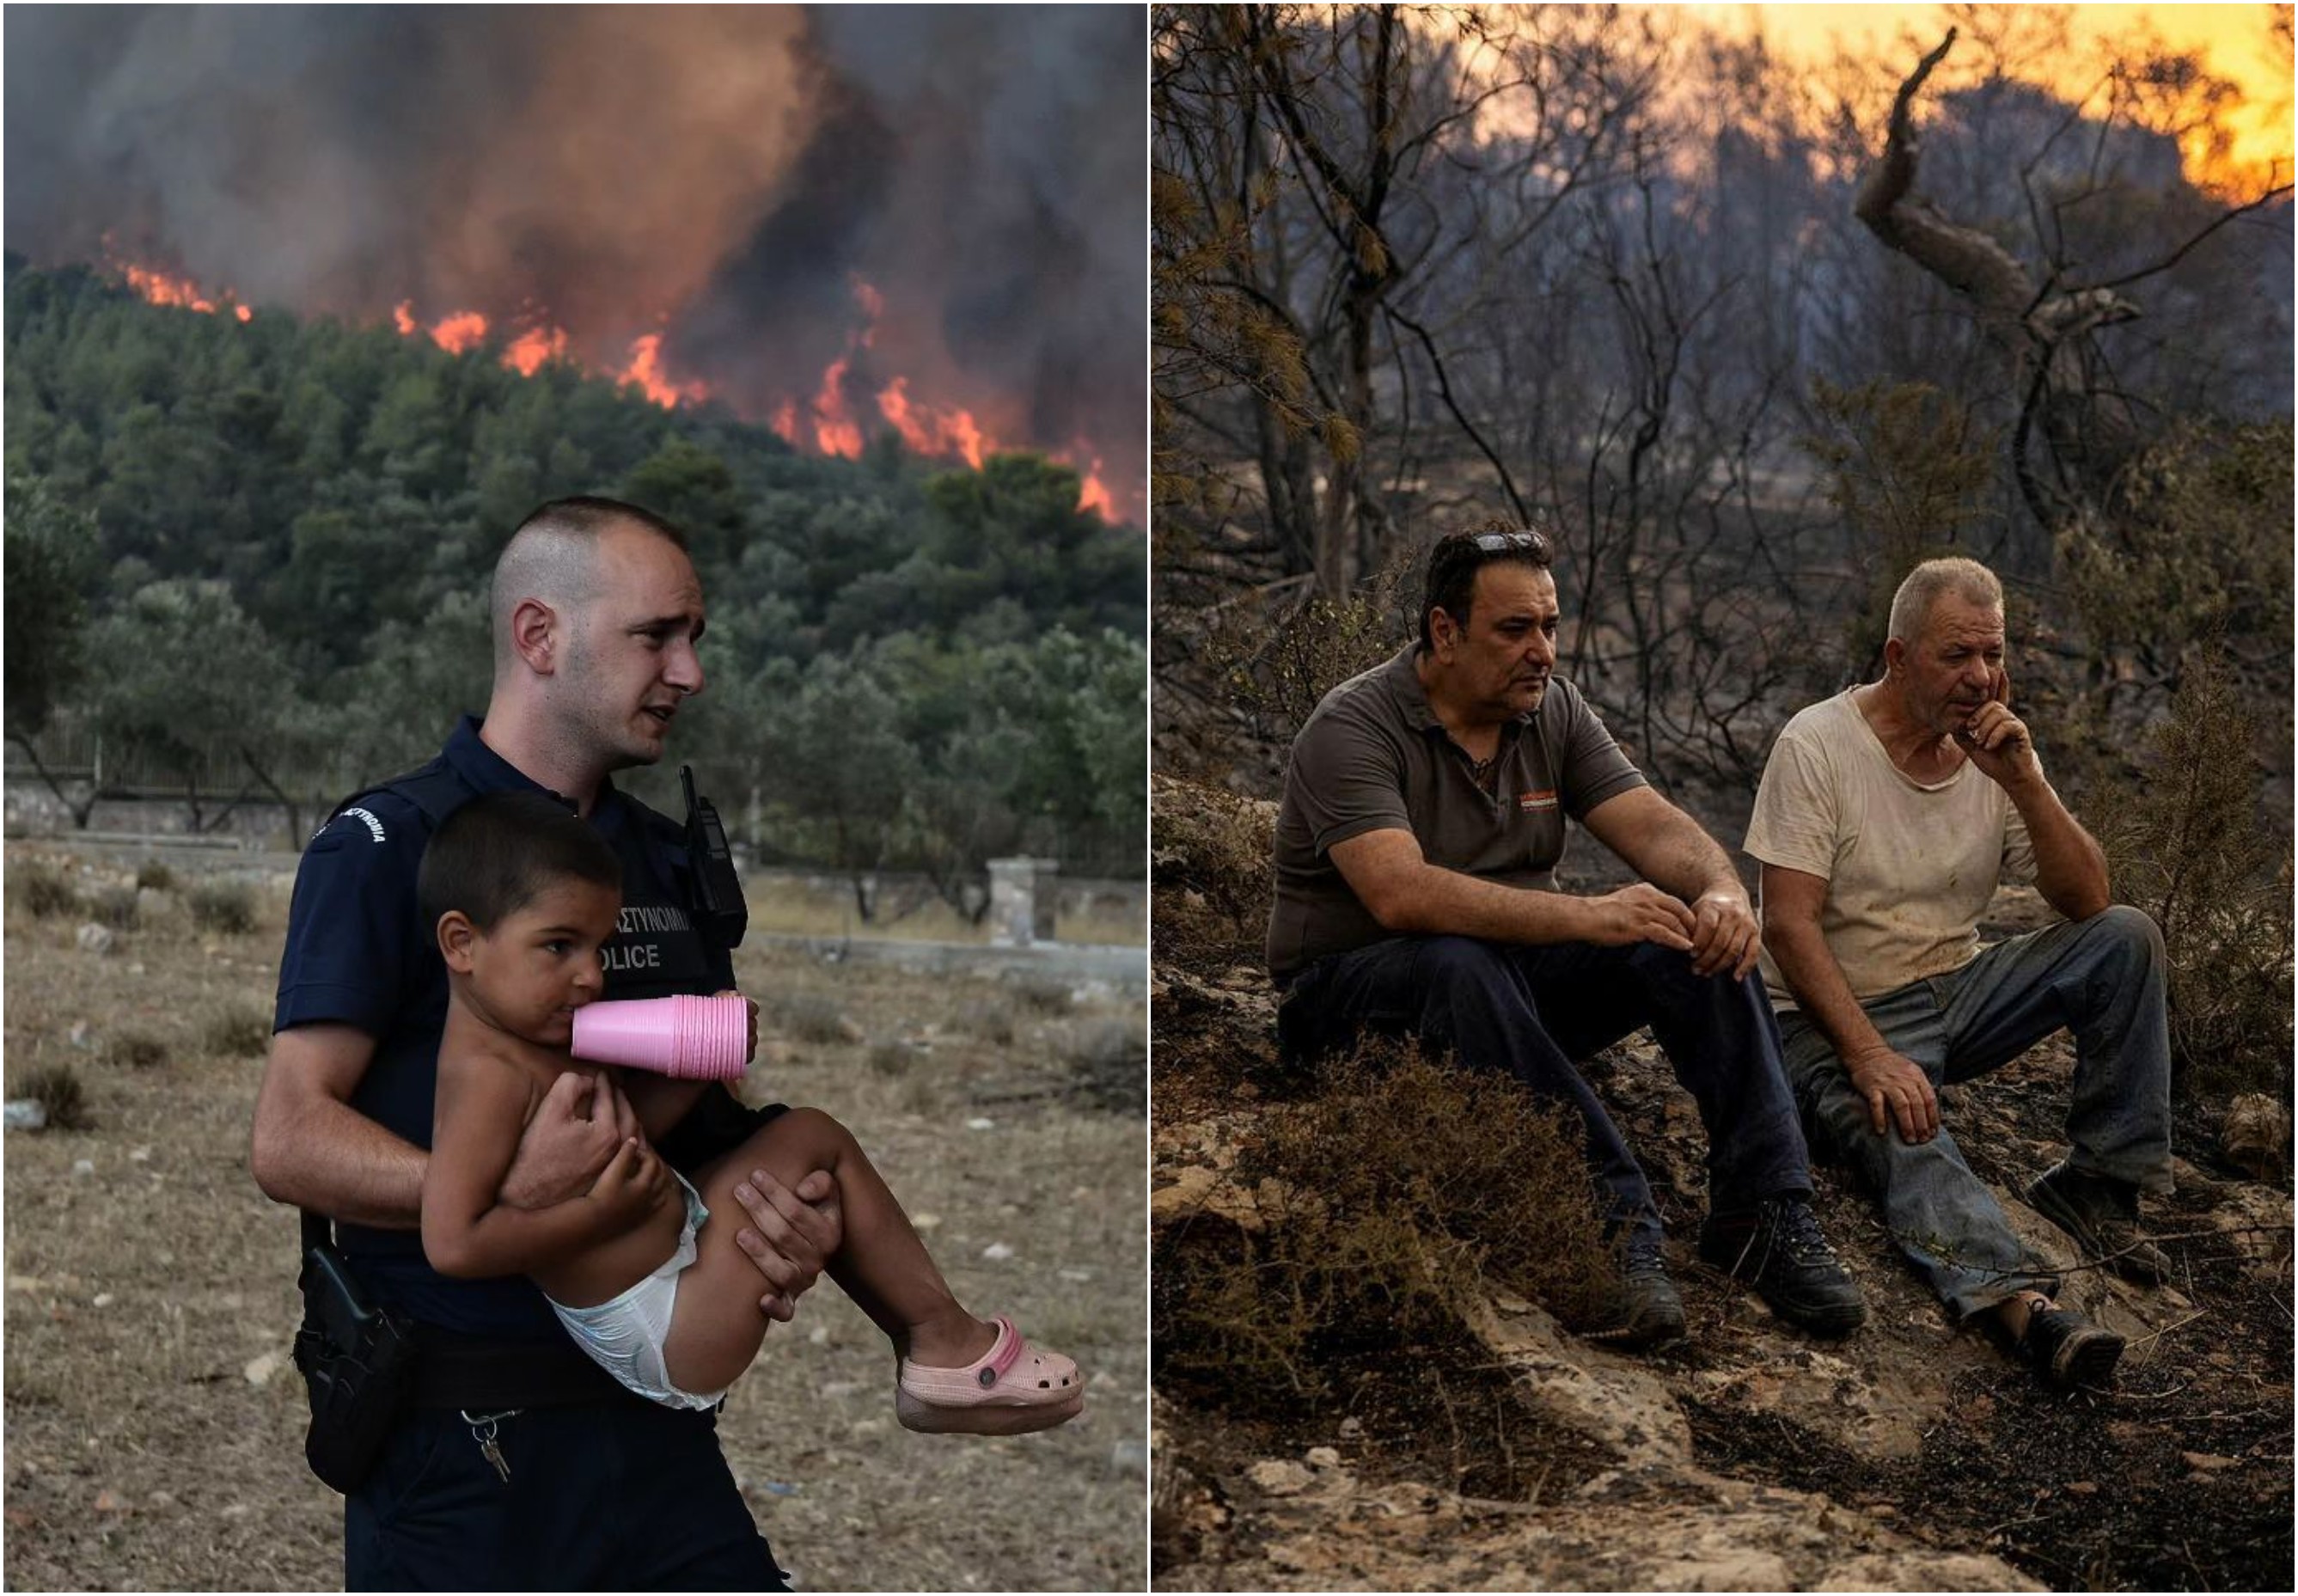 Οι καταστροφικές πυρκαγιές μέσα από τον φακό 5 φωτογράφων